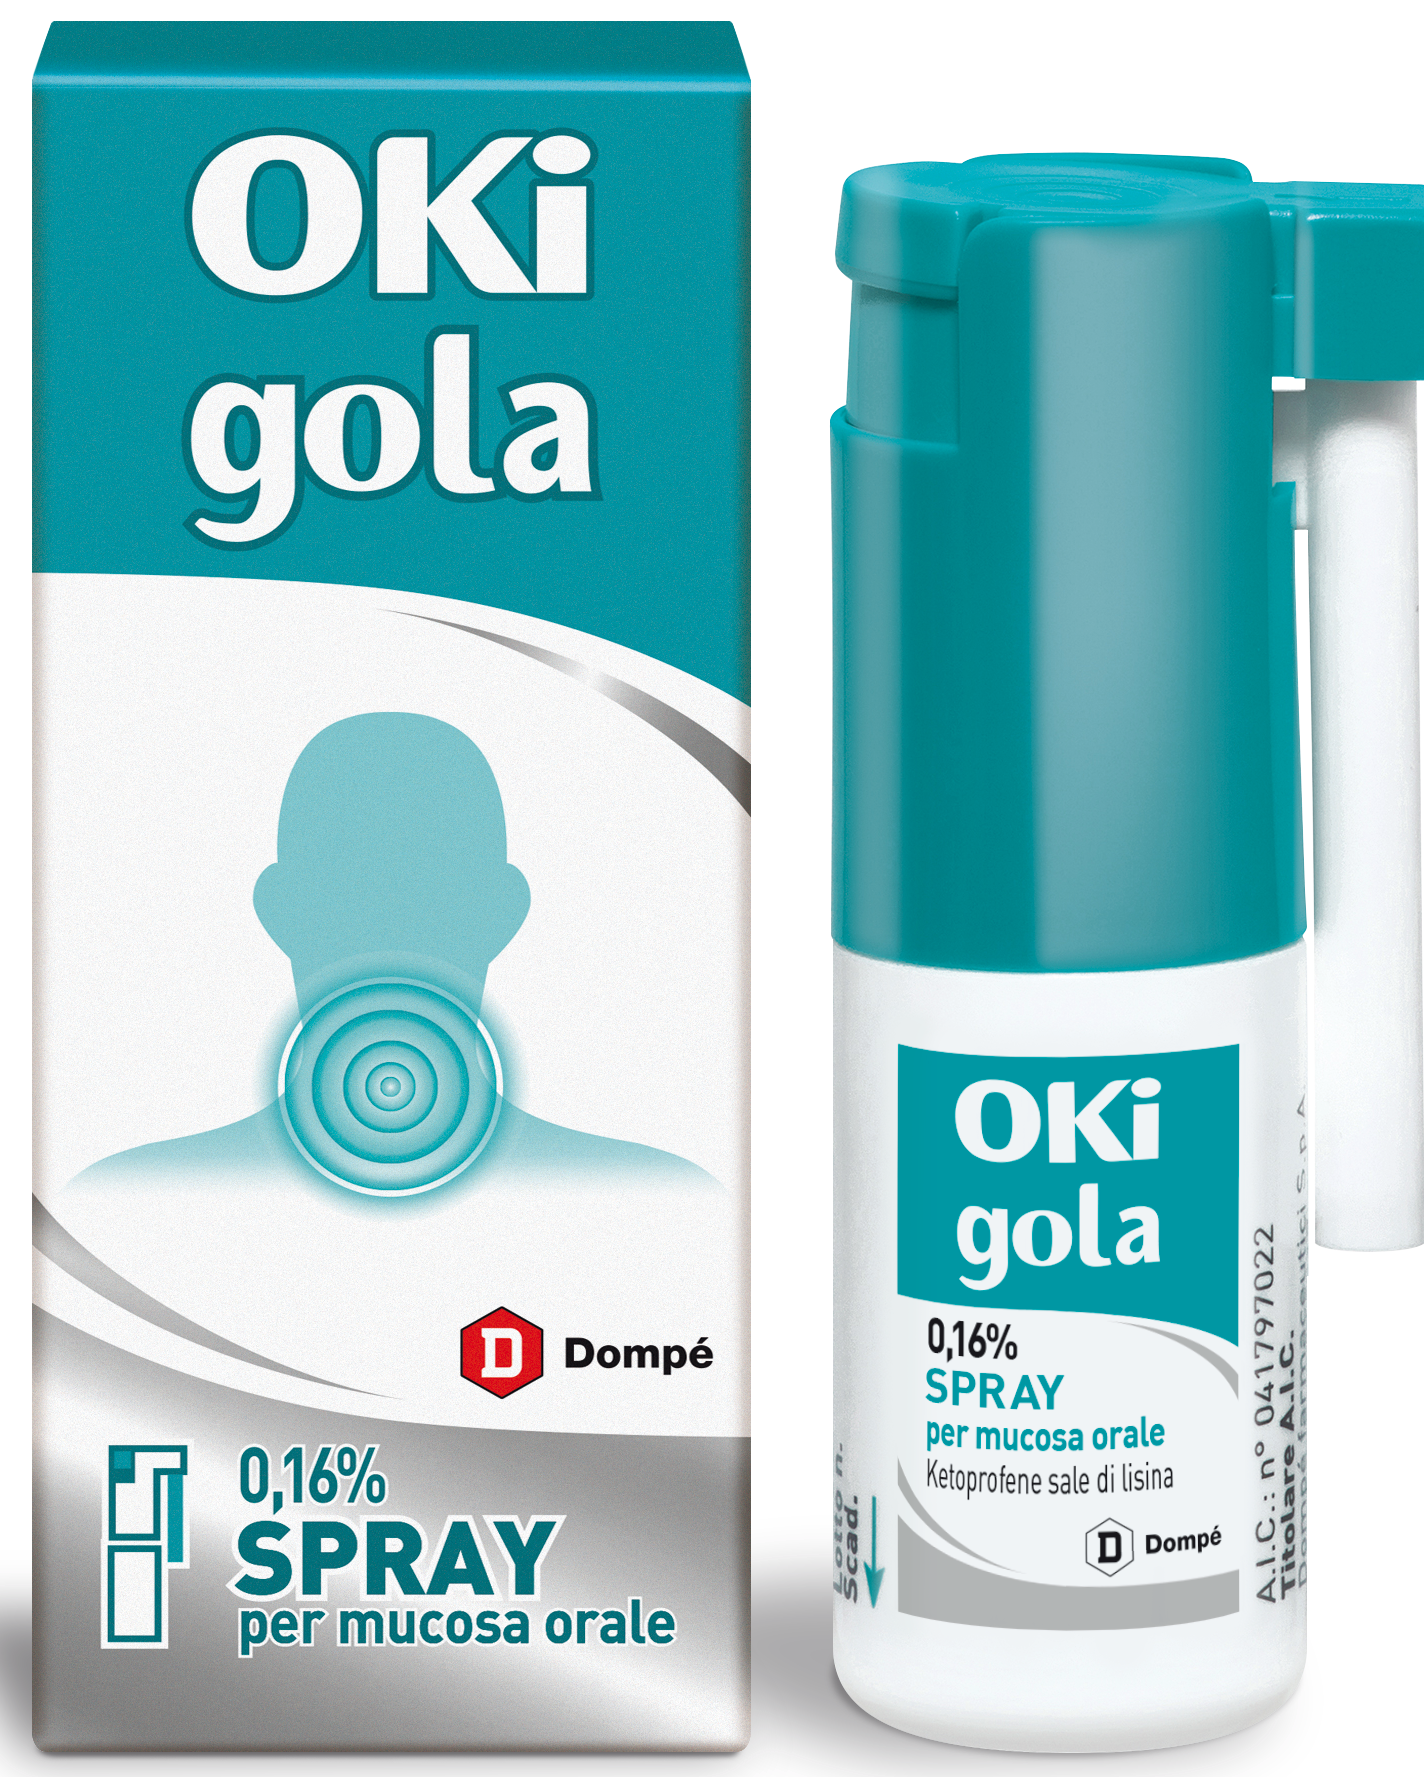 Image of Oki Infiammazione e Dolore Spray Ketoprofene Analgesico 15 ml